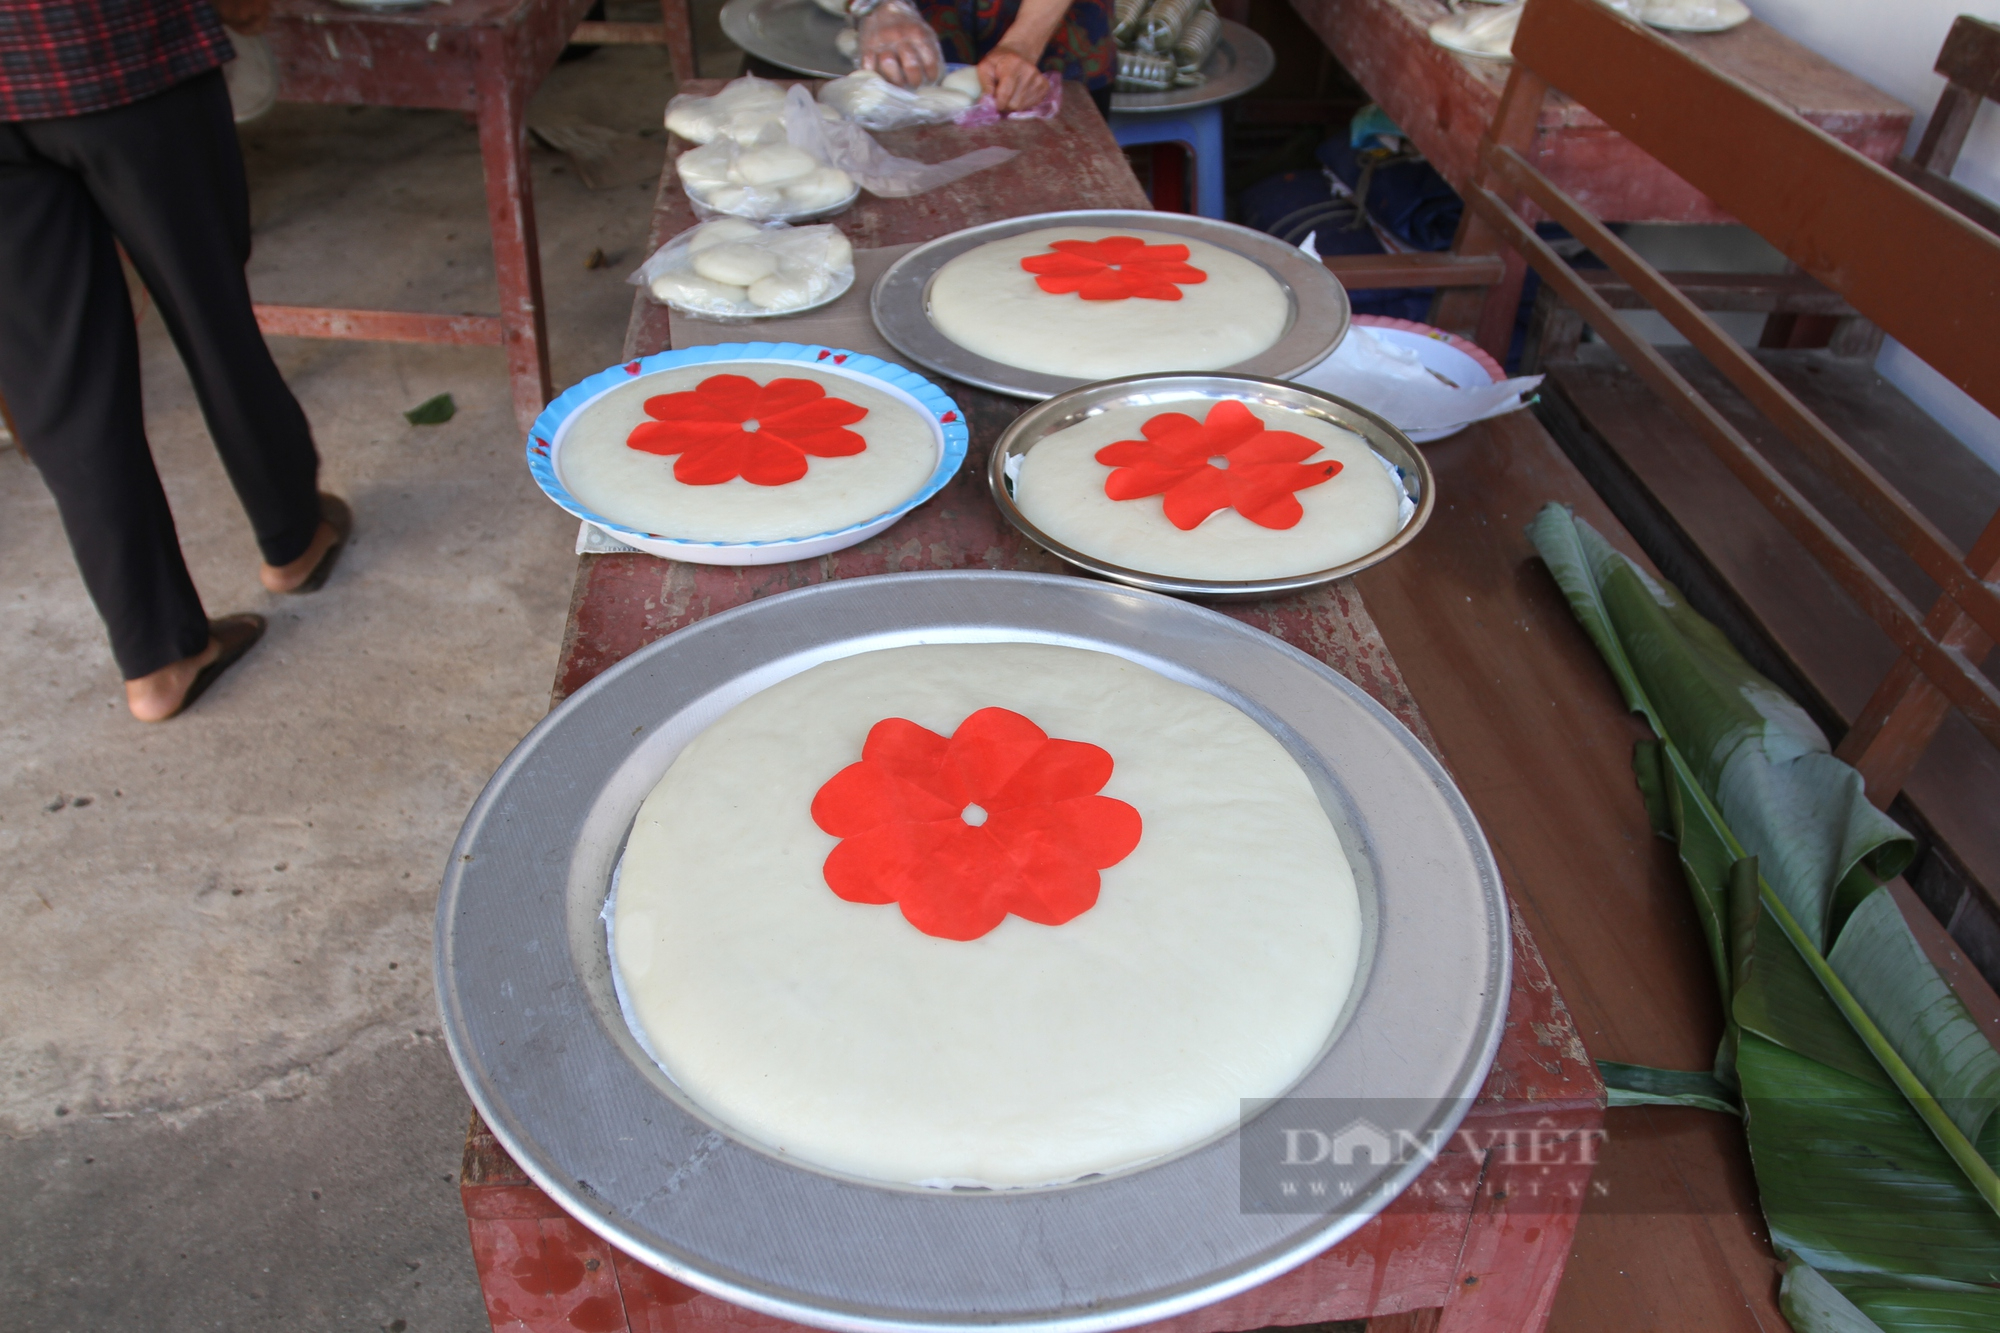 Cùng bà con Thái Nguyên đón tết cơm mới, rước kiệu, làm bánh chưng bánh giầy cảm tạ Thành Hoàng làng  - Ảnh 2.